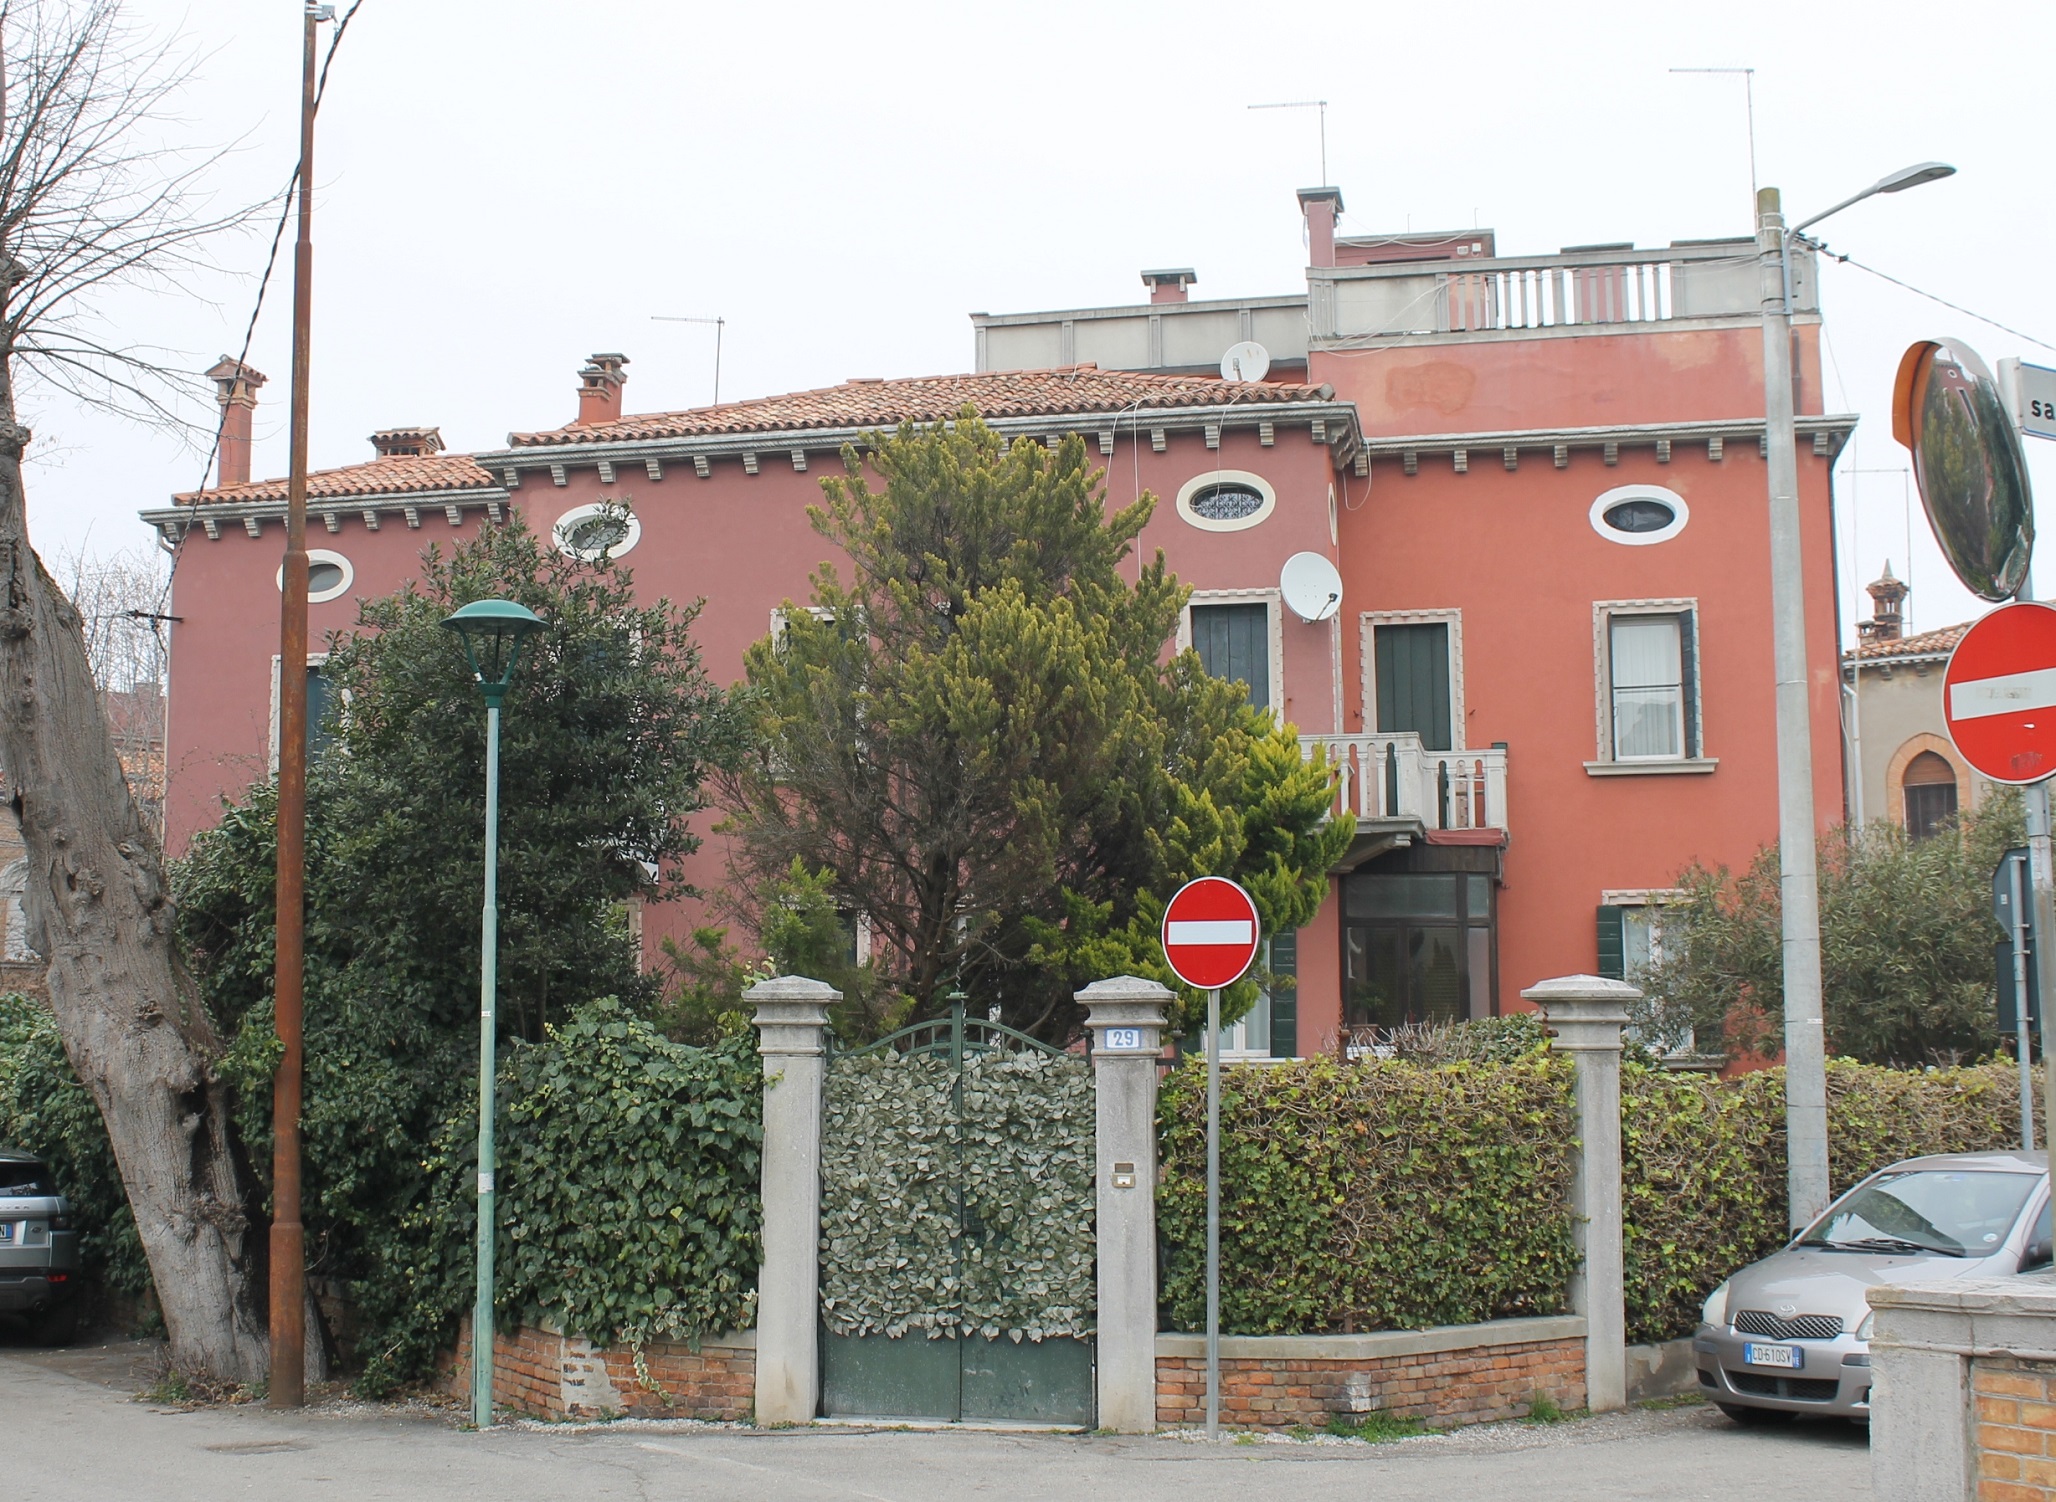 [Villa plurifamiliare in via Lorenzo Marcello, 27, 29] (villa, plurifamiliare) - Venezia (VE)  (XX)